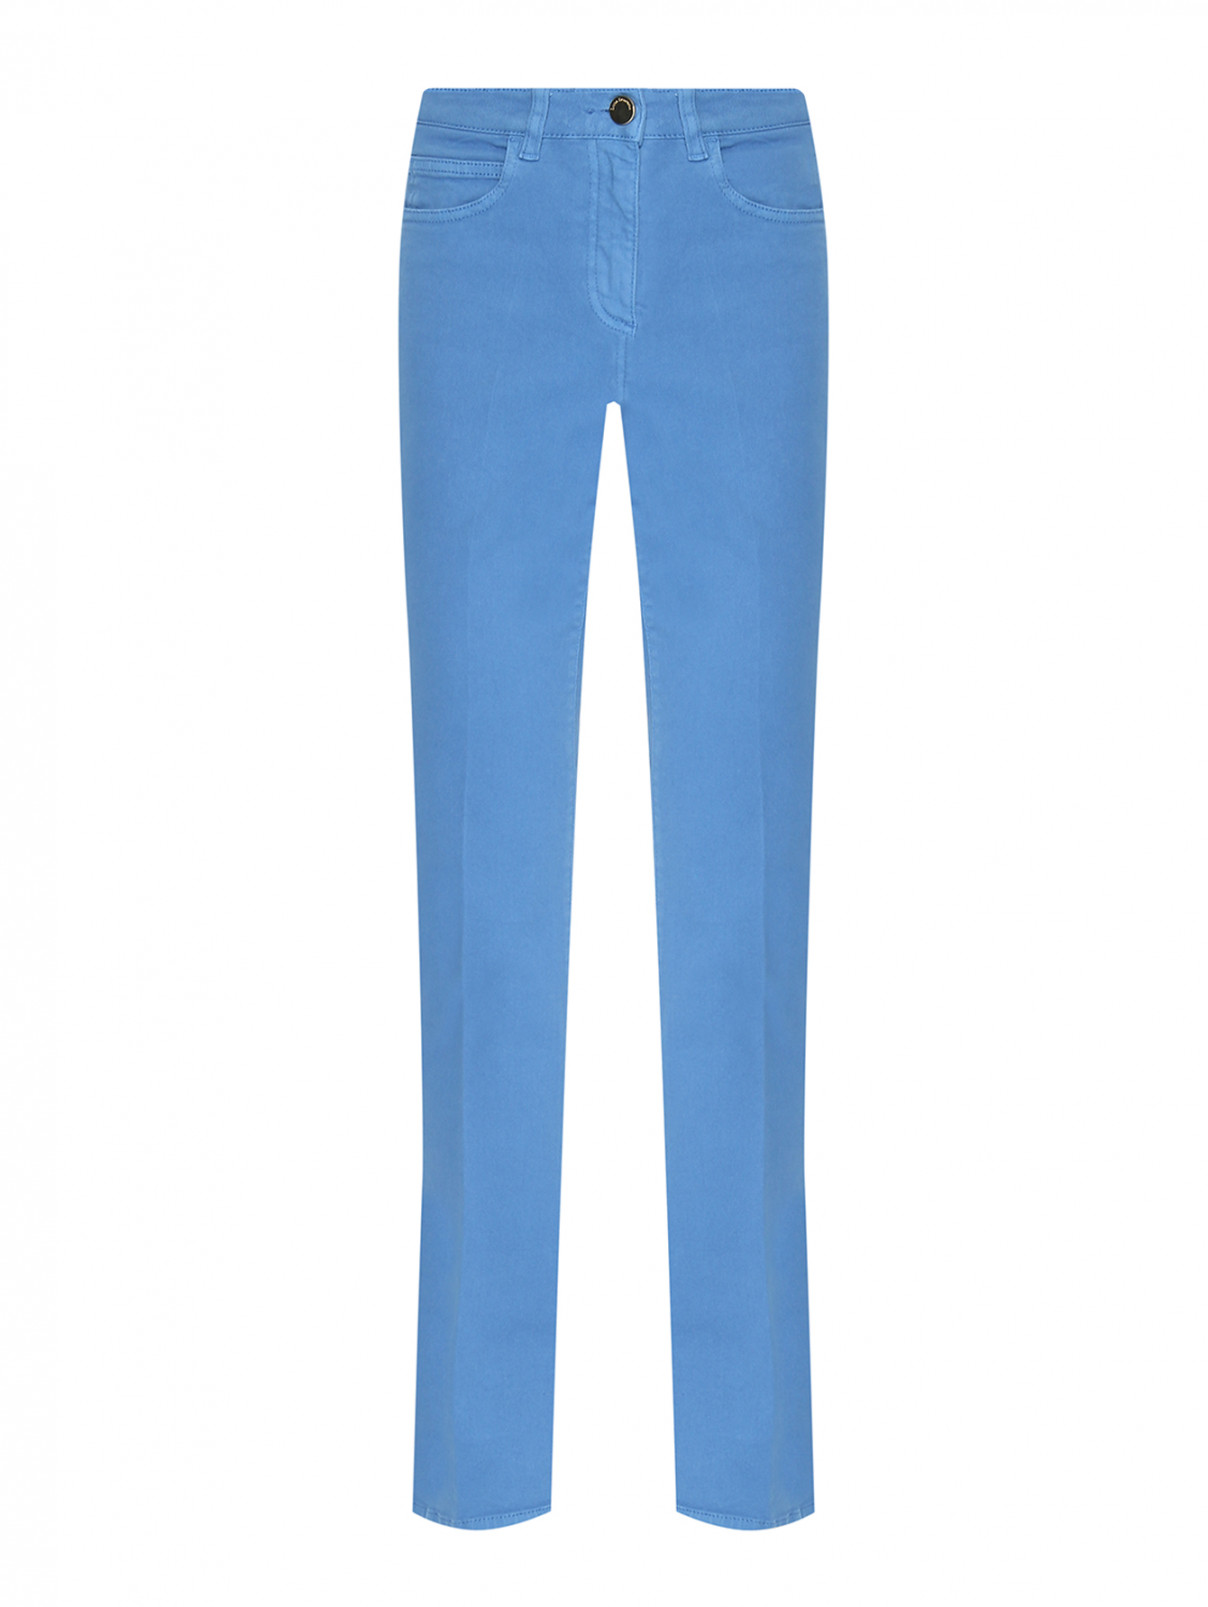 Однотонные джинсы-клеш Luisa Spagnoli  –  Общий вид  – Цвет:  Синий